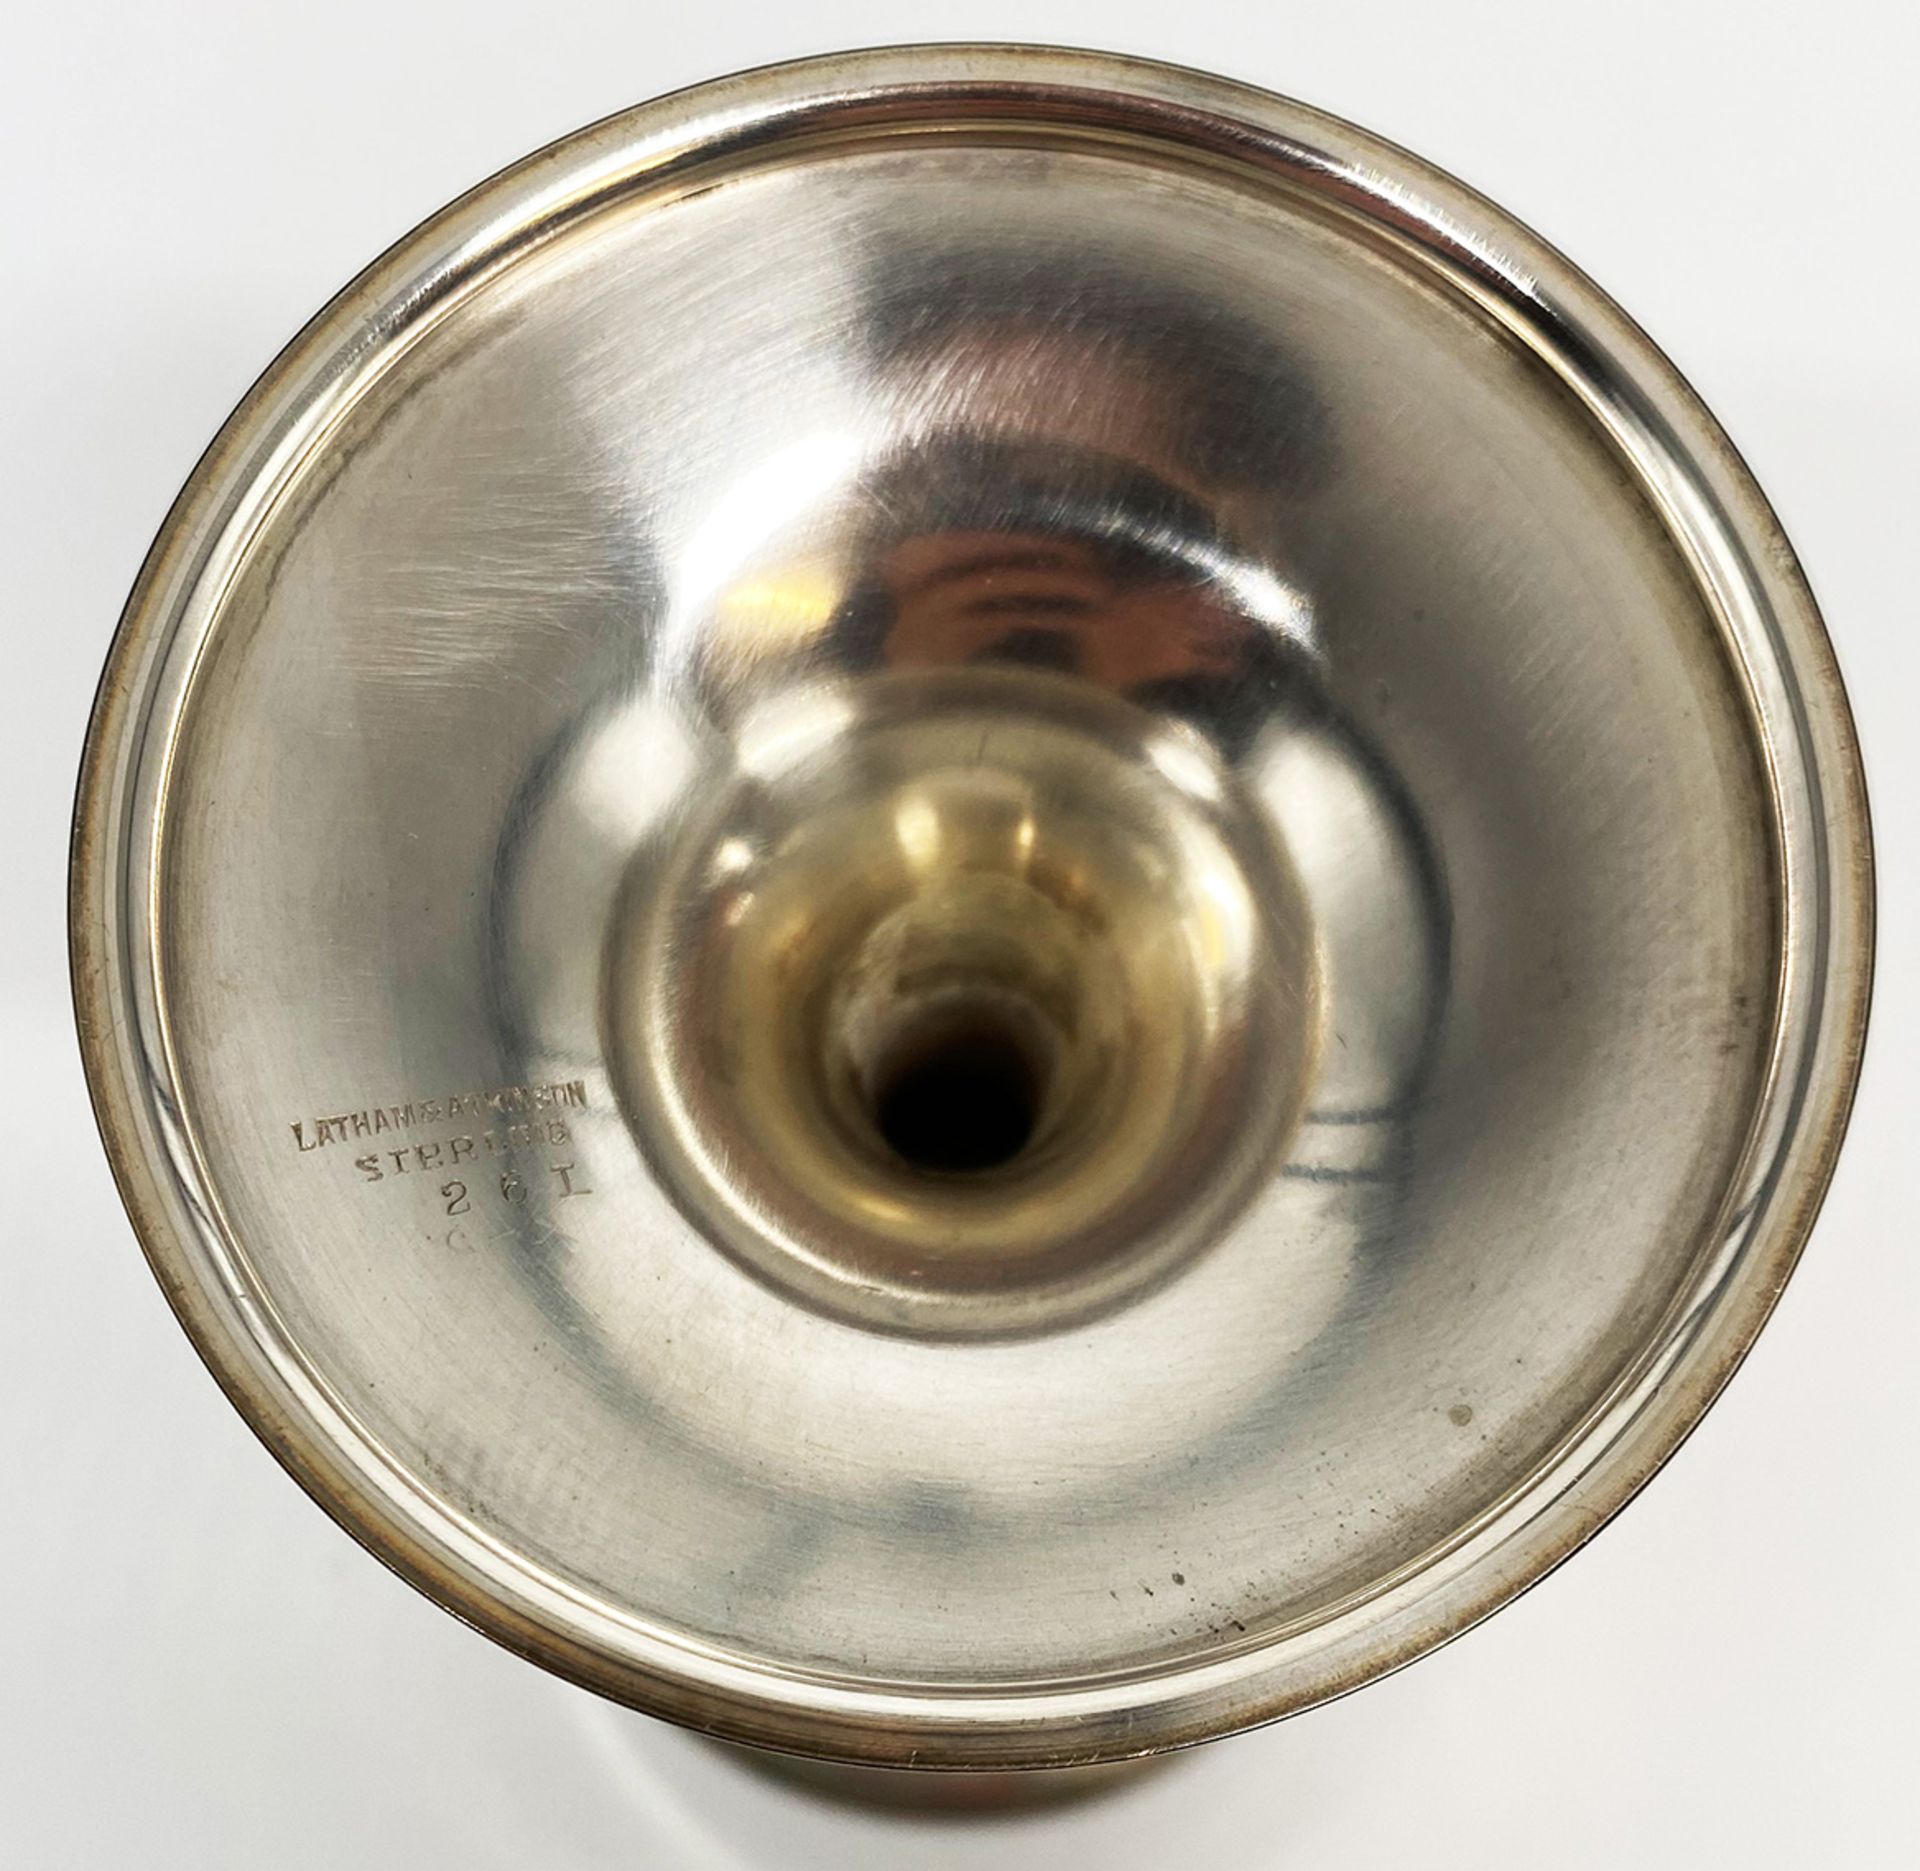 6 Silberkelche, Sterling, Latham & Atkinson, glockenförmiger Korpus auf schlichtem Fuß, gepunzt, - Image 3 of 3